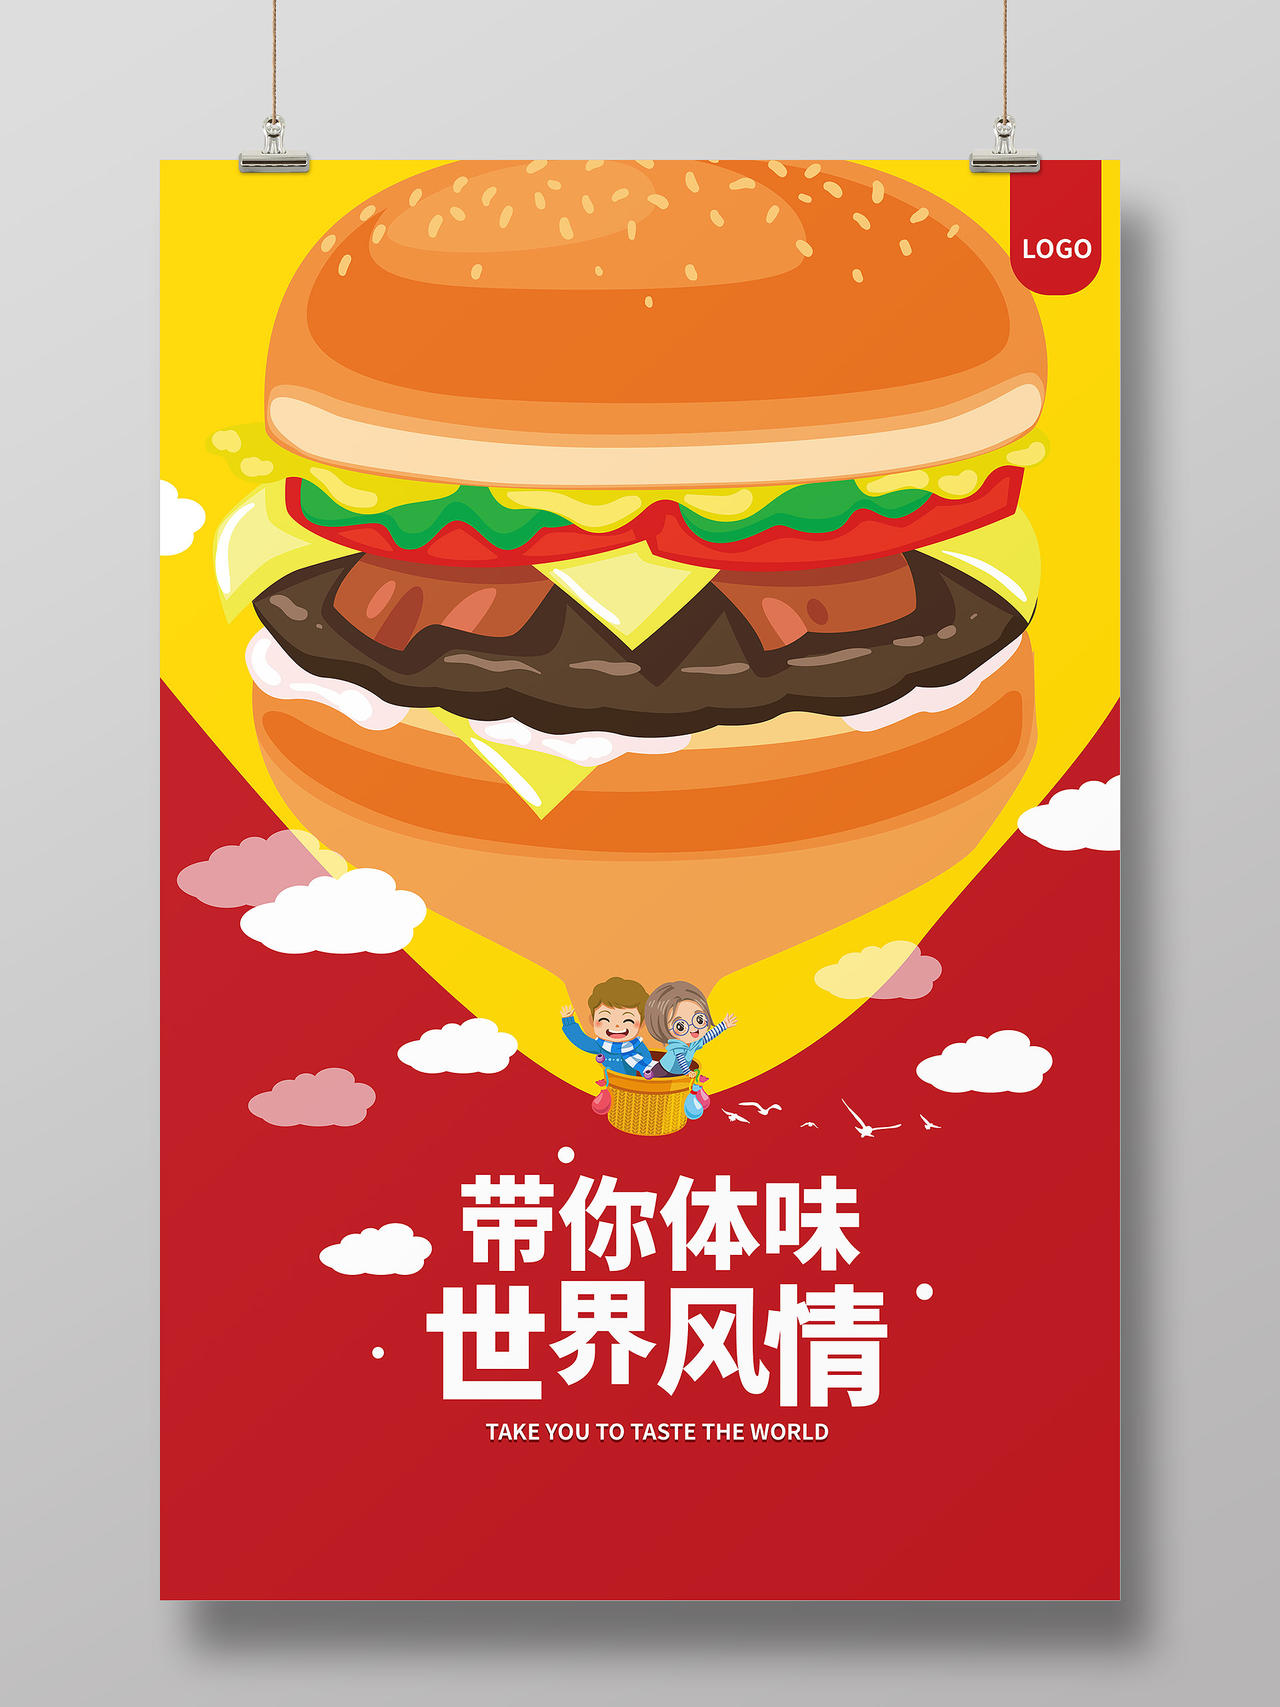 红色背景简洁创意卡通带你体味世界风情汉堡促销海报设计麦当劳